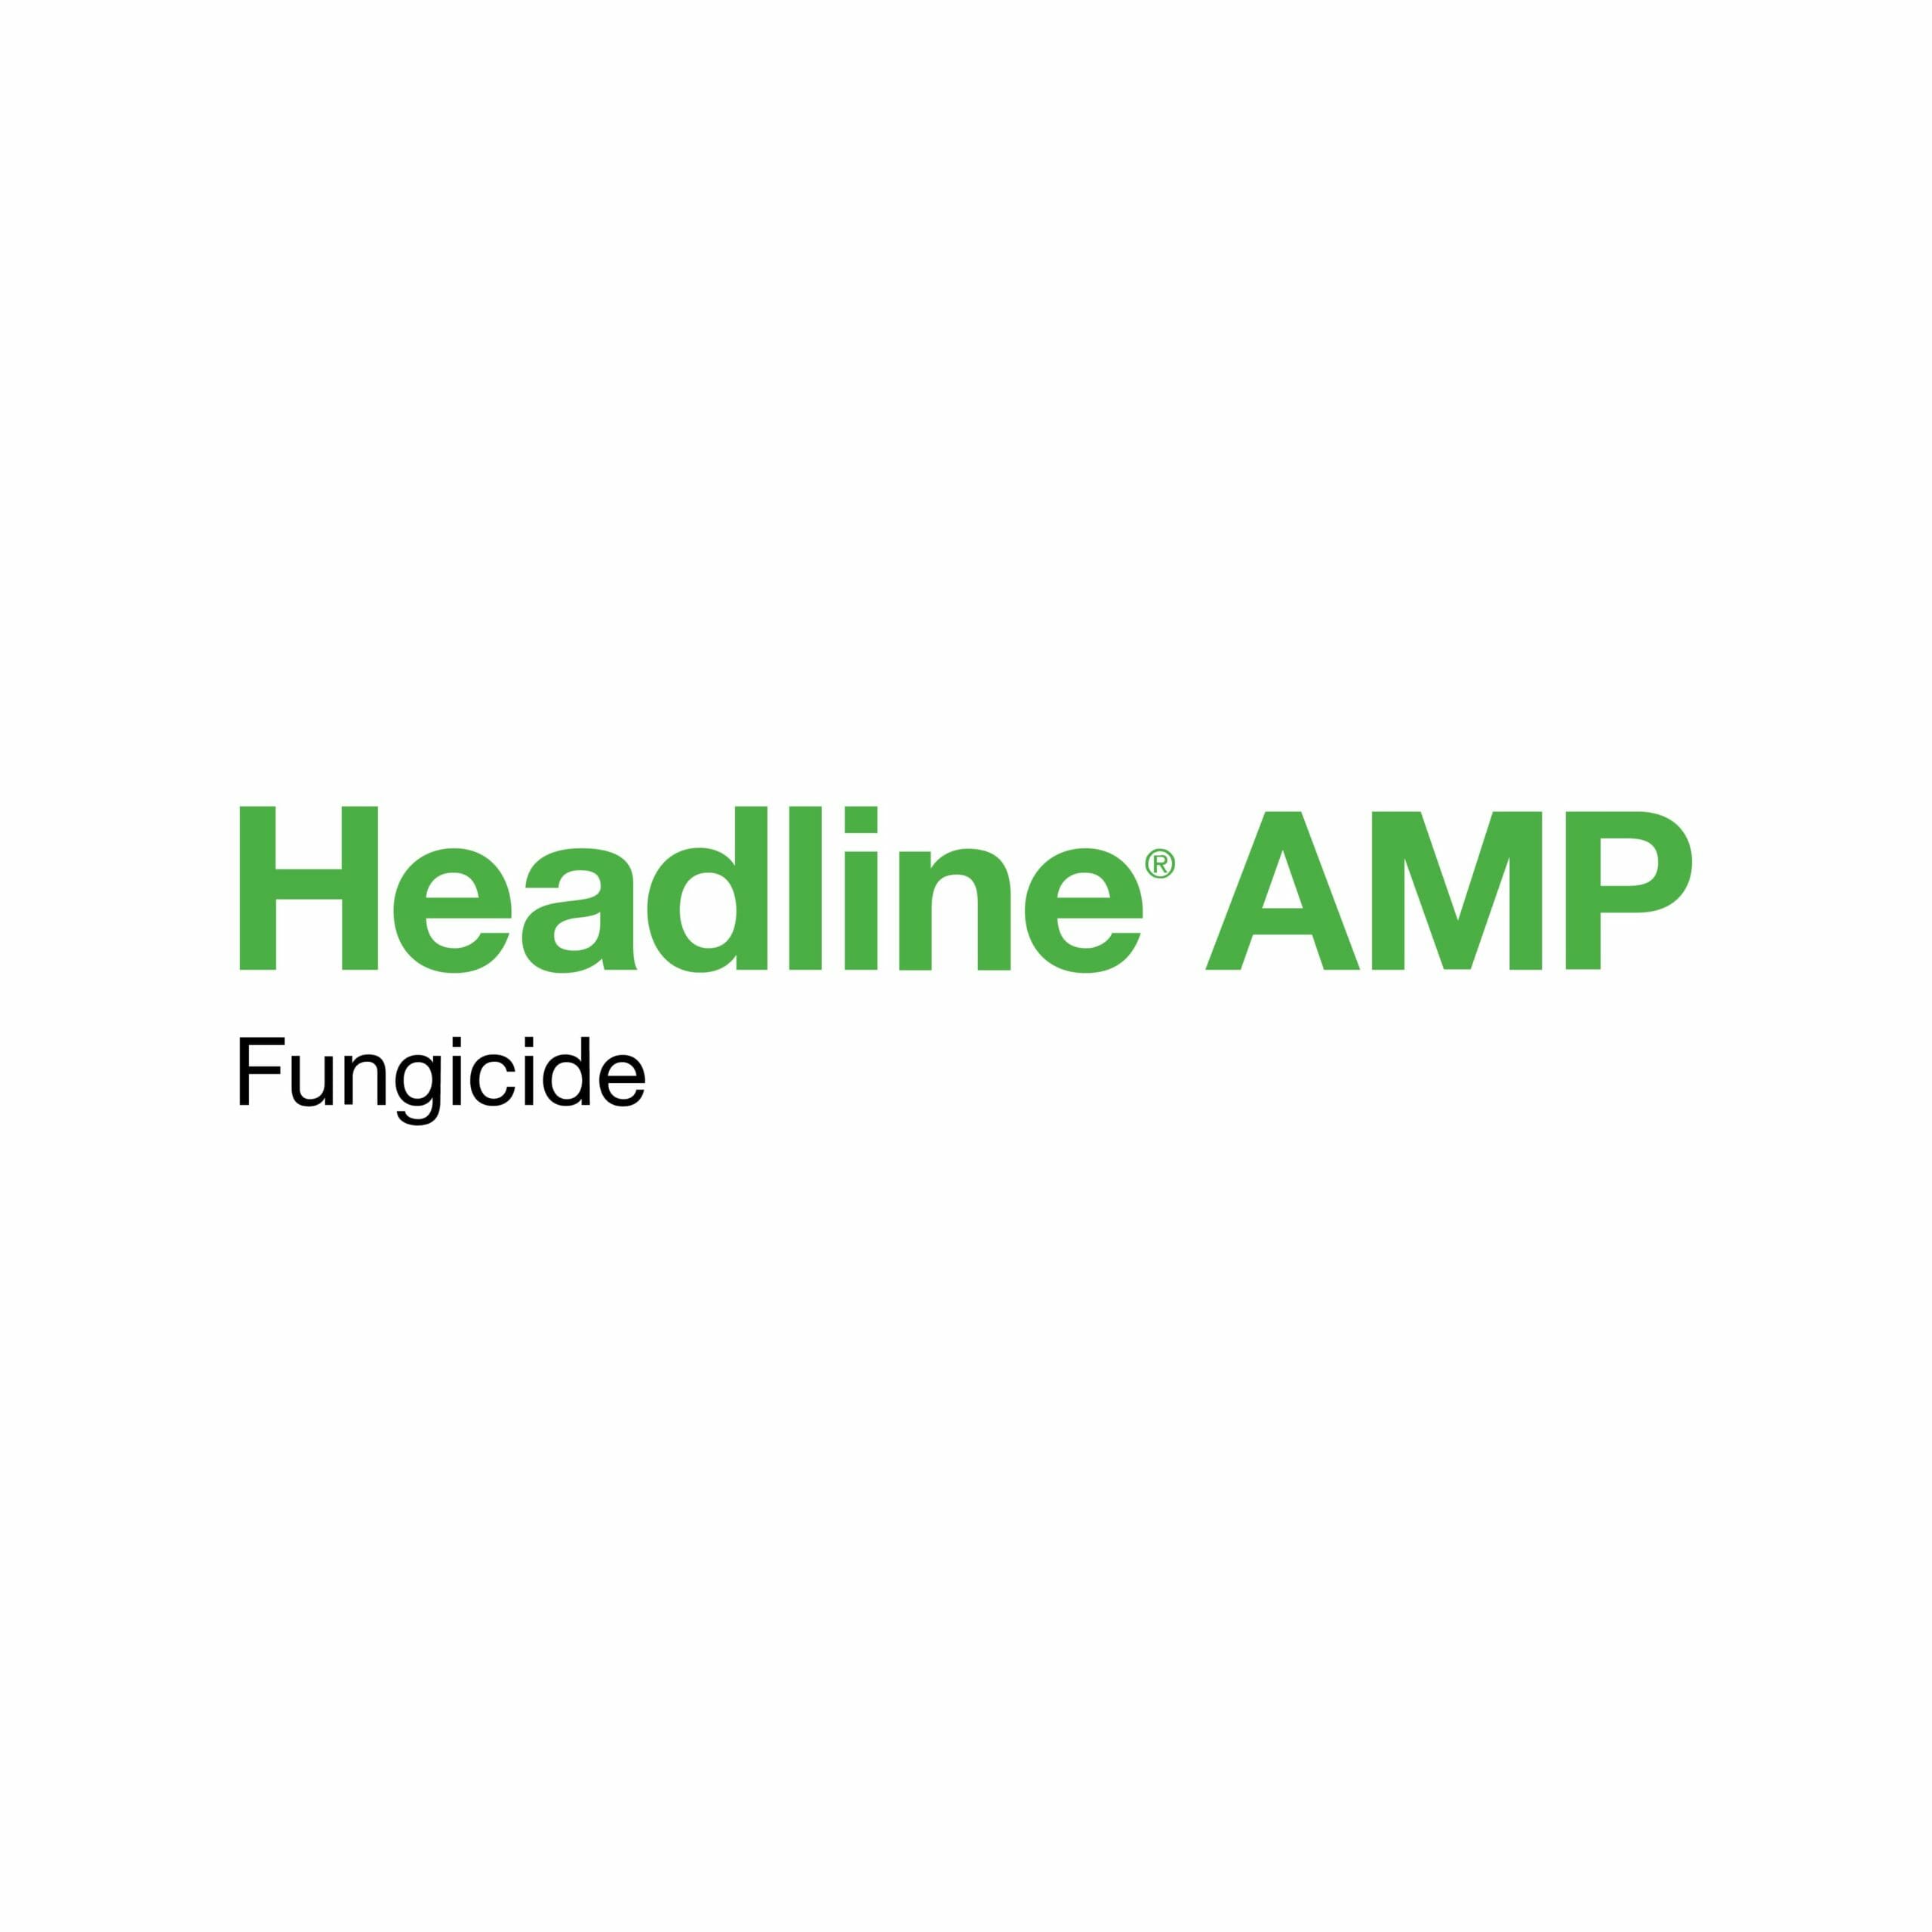 Headline Amp